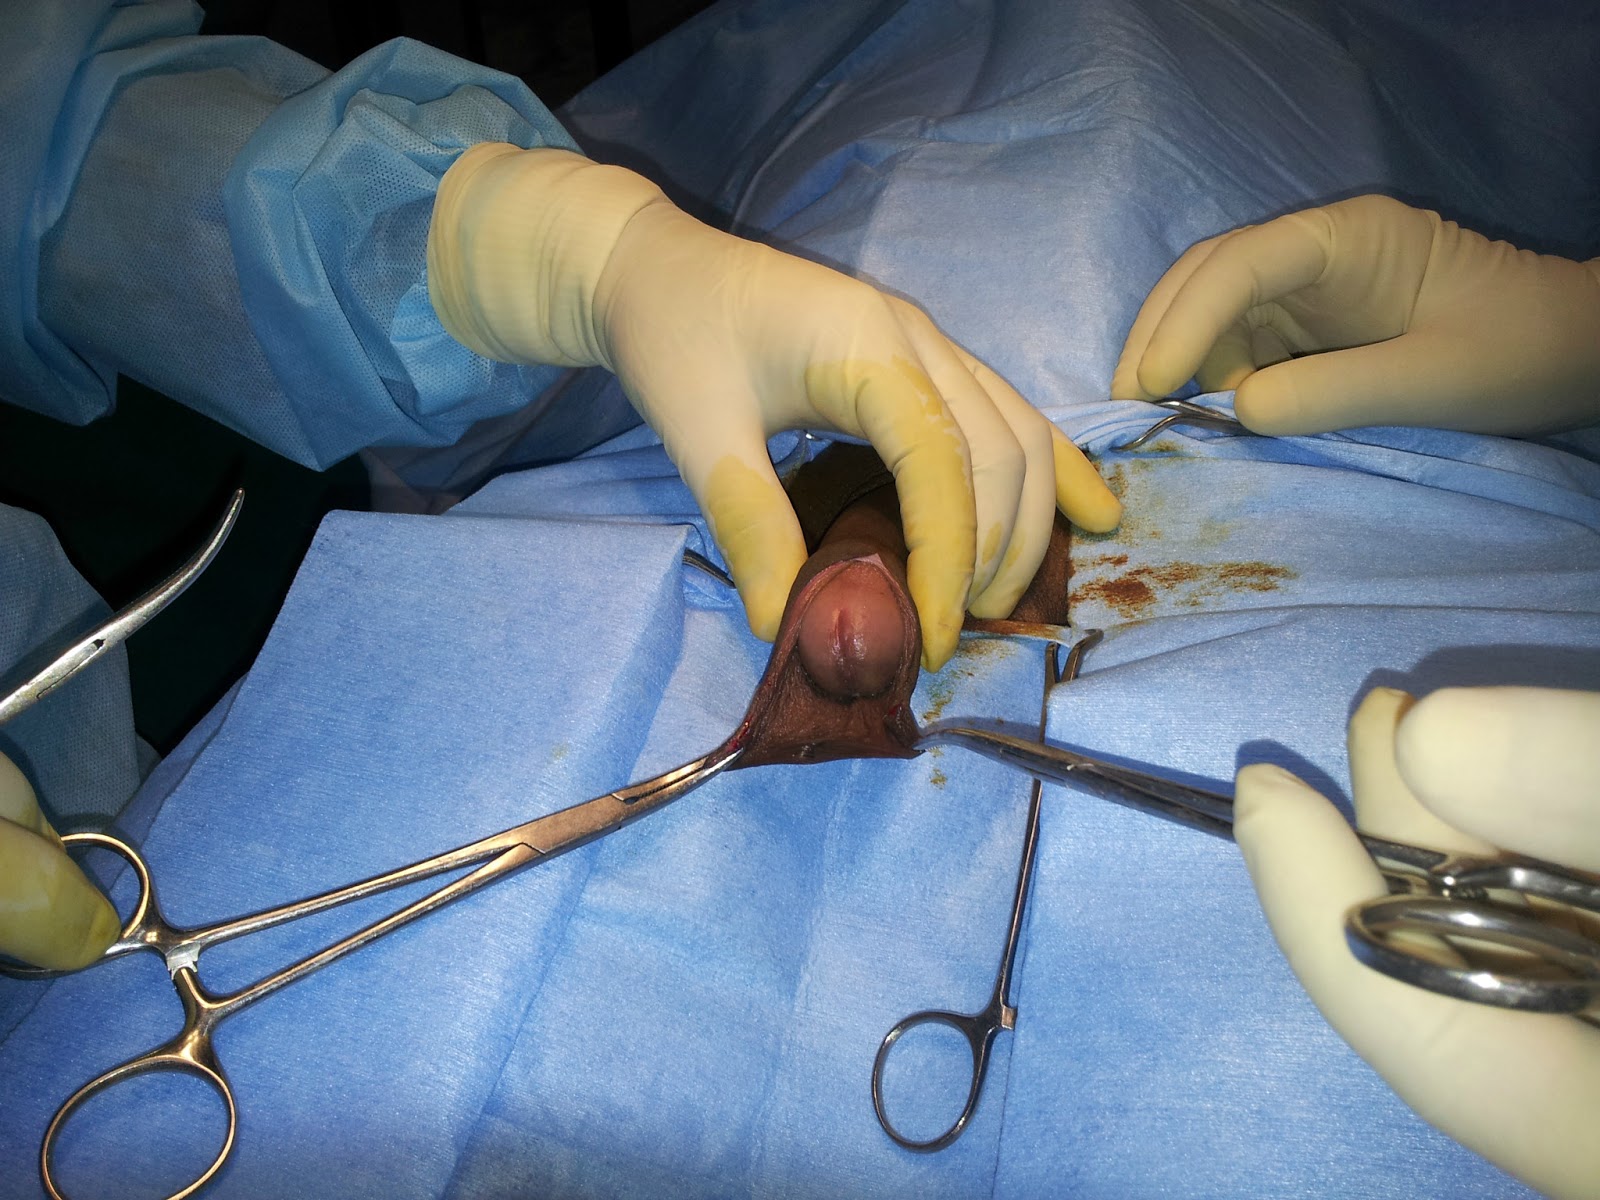 Férfi intimplasztika, pénisznagyobbítás - dr. Pataki Gergely plasztikai sebész